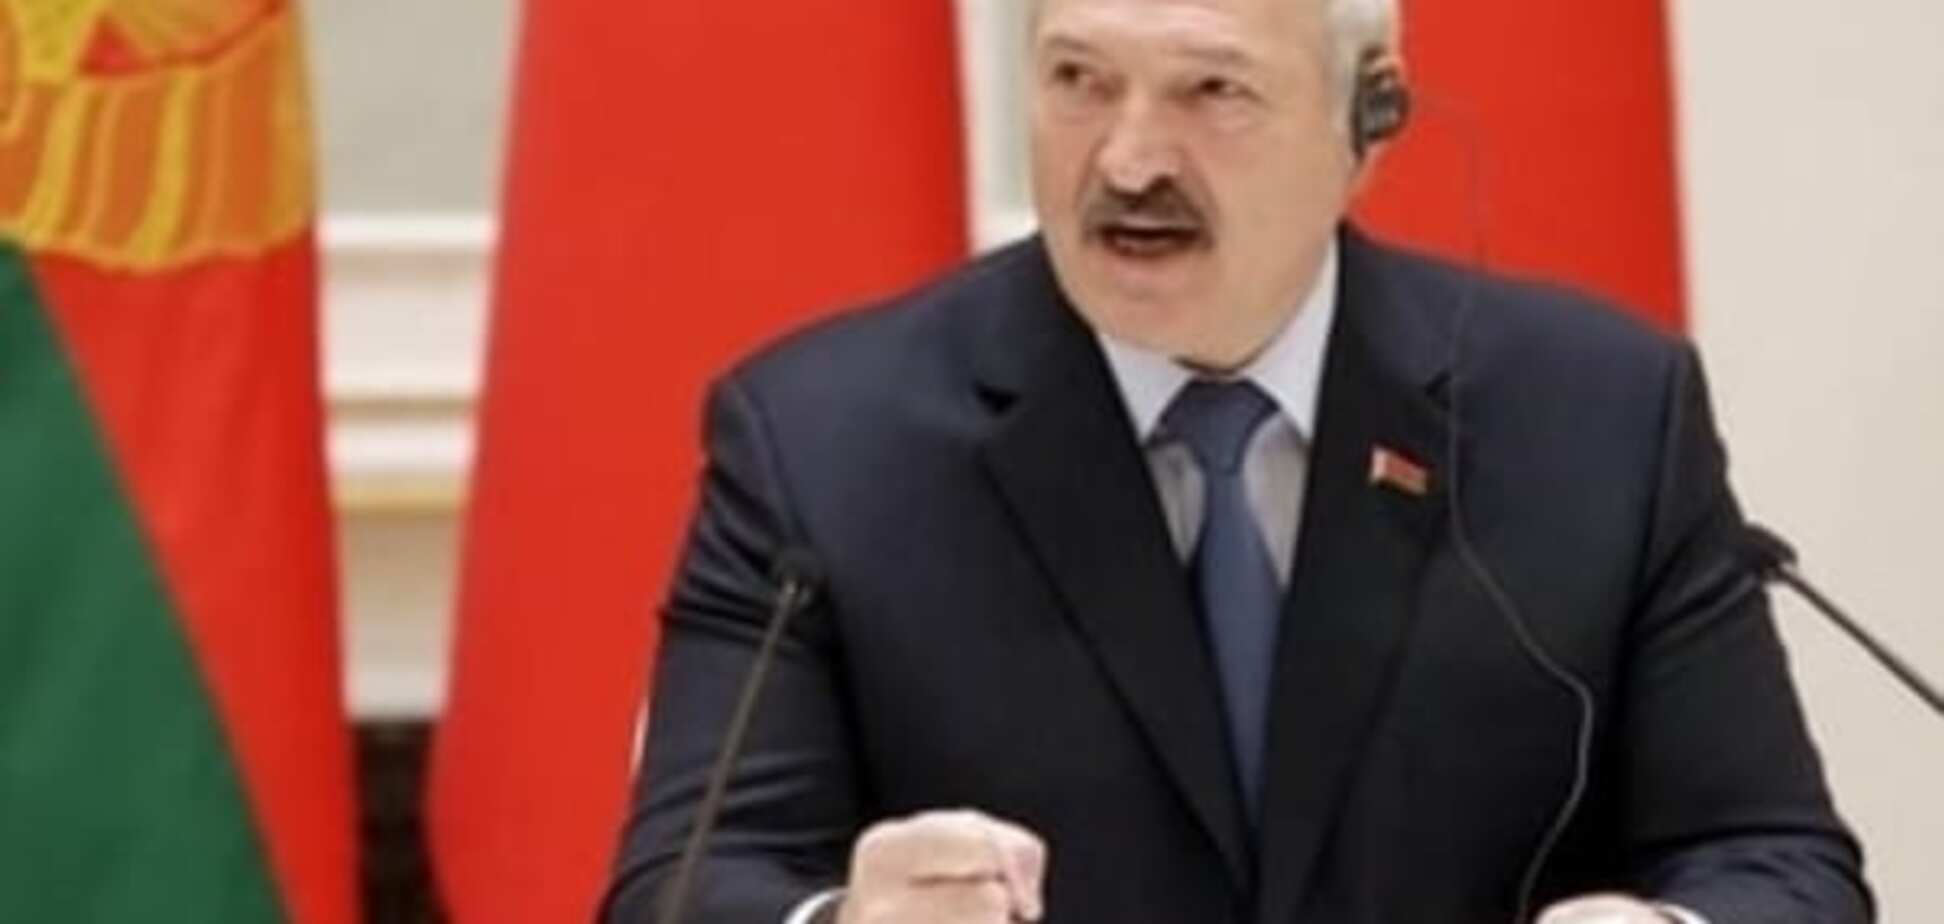 Опять за старое. Лукашенко идет в президенты в пятый раз